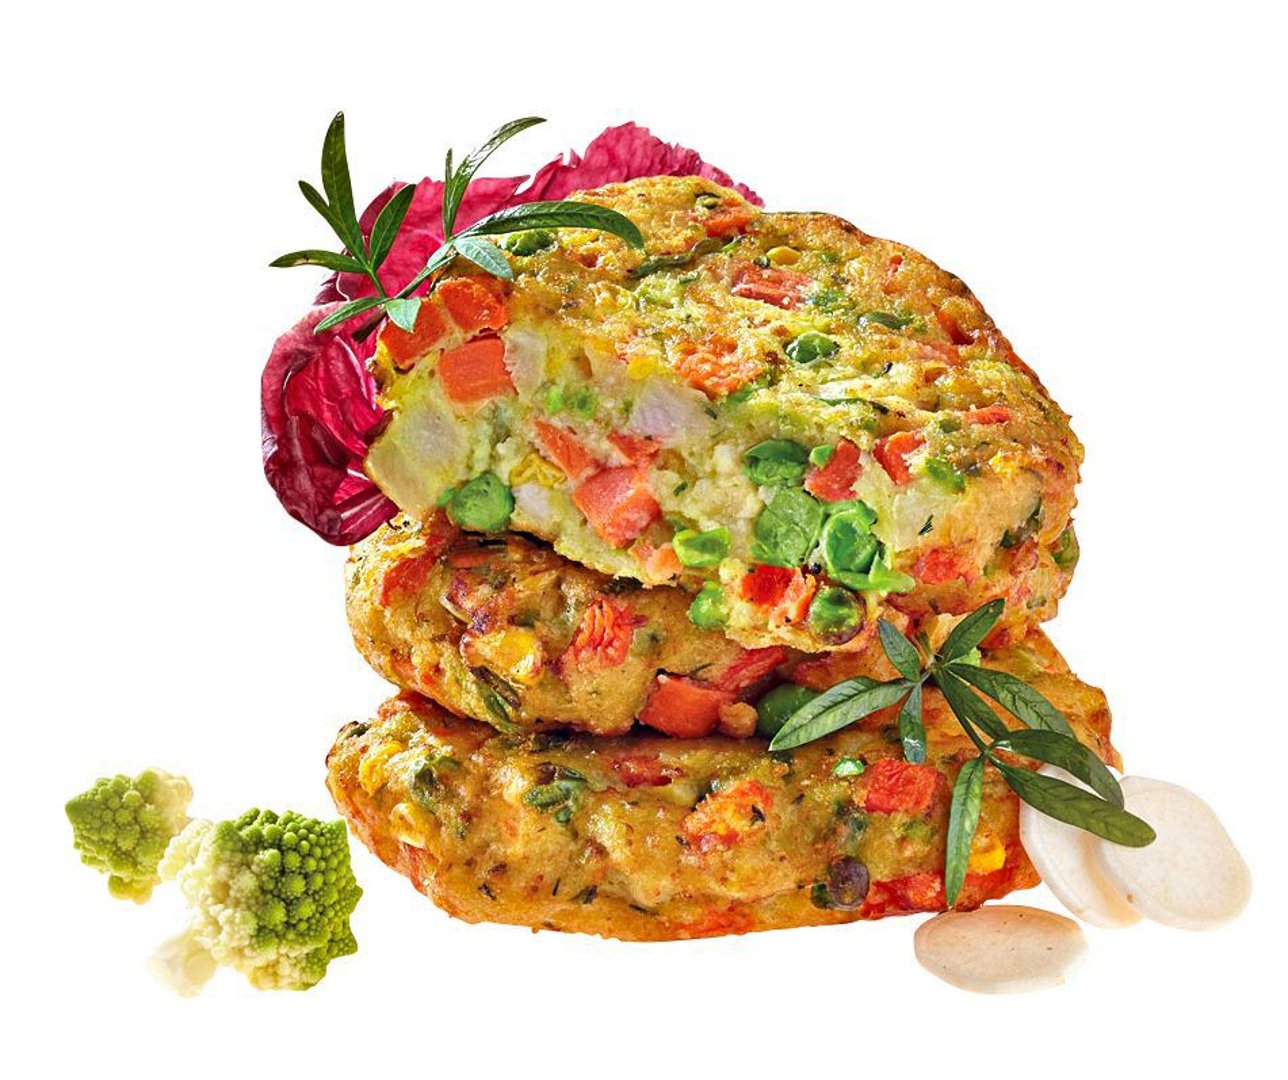 Avita - Gemüse Frikadelle tiefgefroren, vorgebacken, vegetarisch, mit knackigem Gartengemüse und Schnittlauch, 16 Stück à 75 g 5 x 1,2 kg Beutel